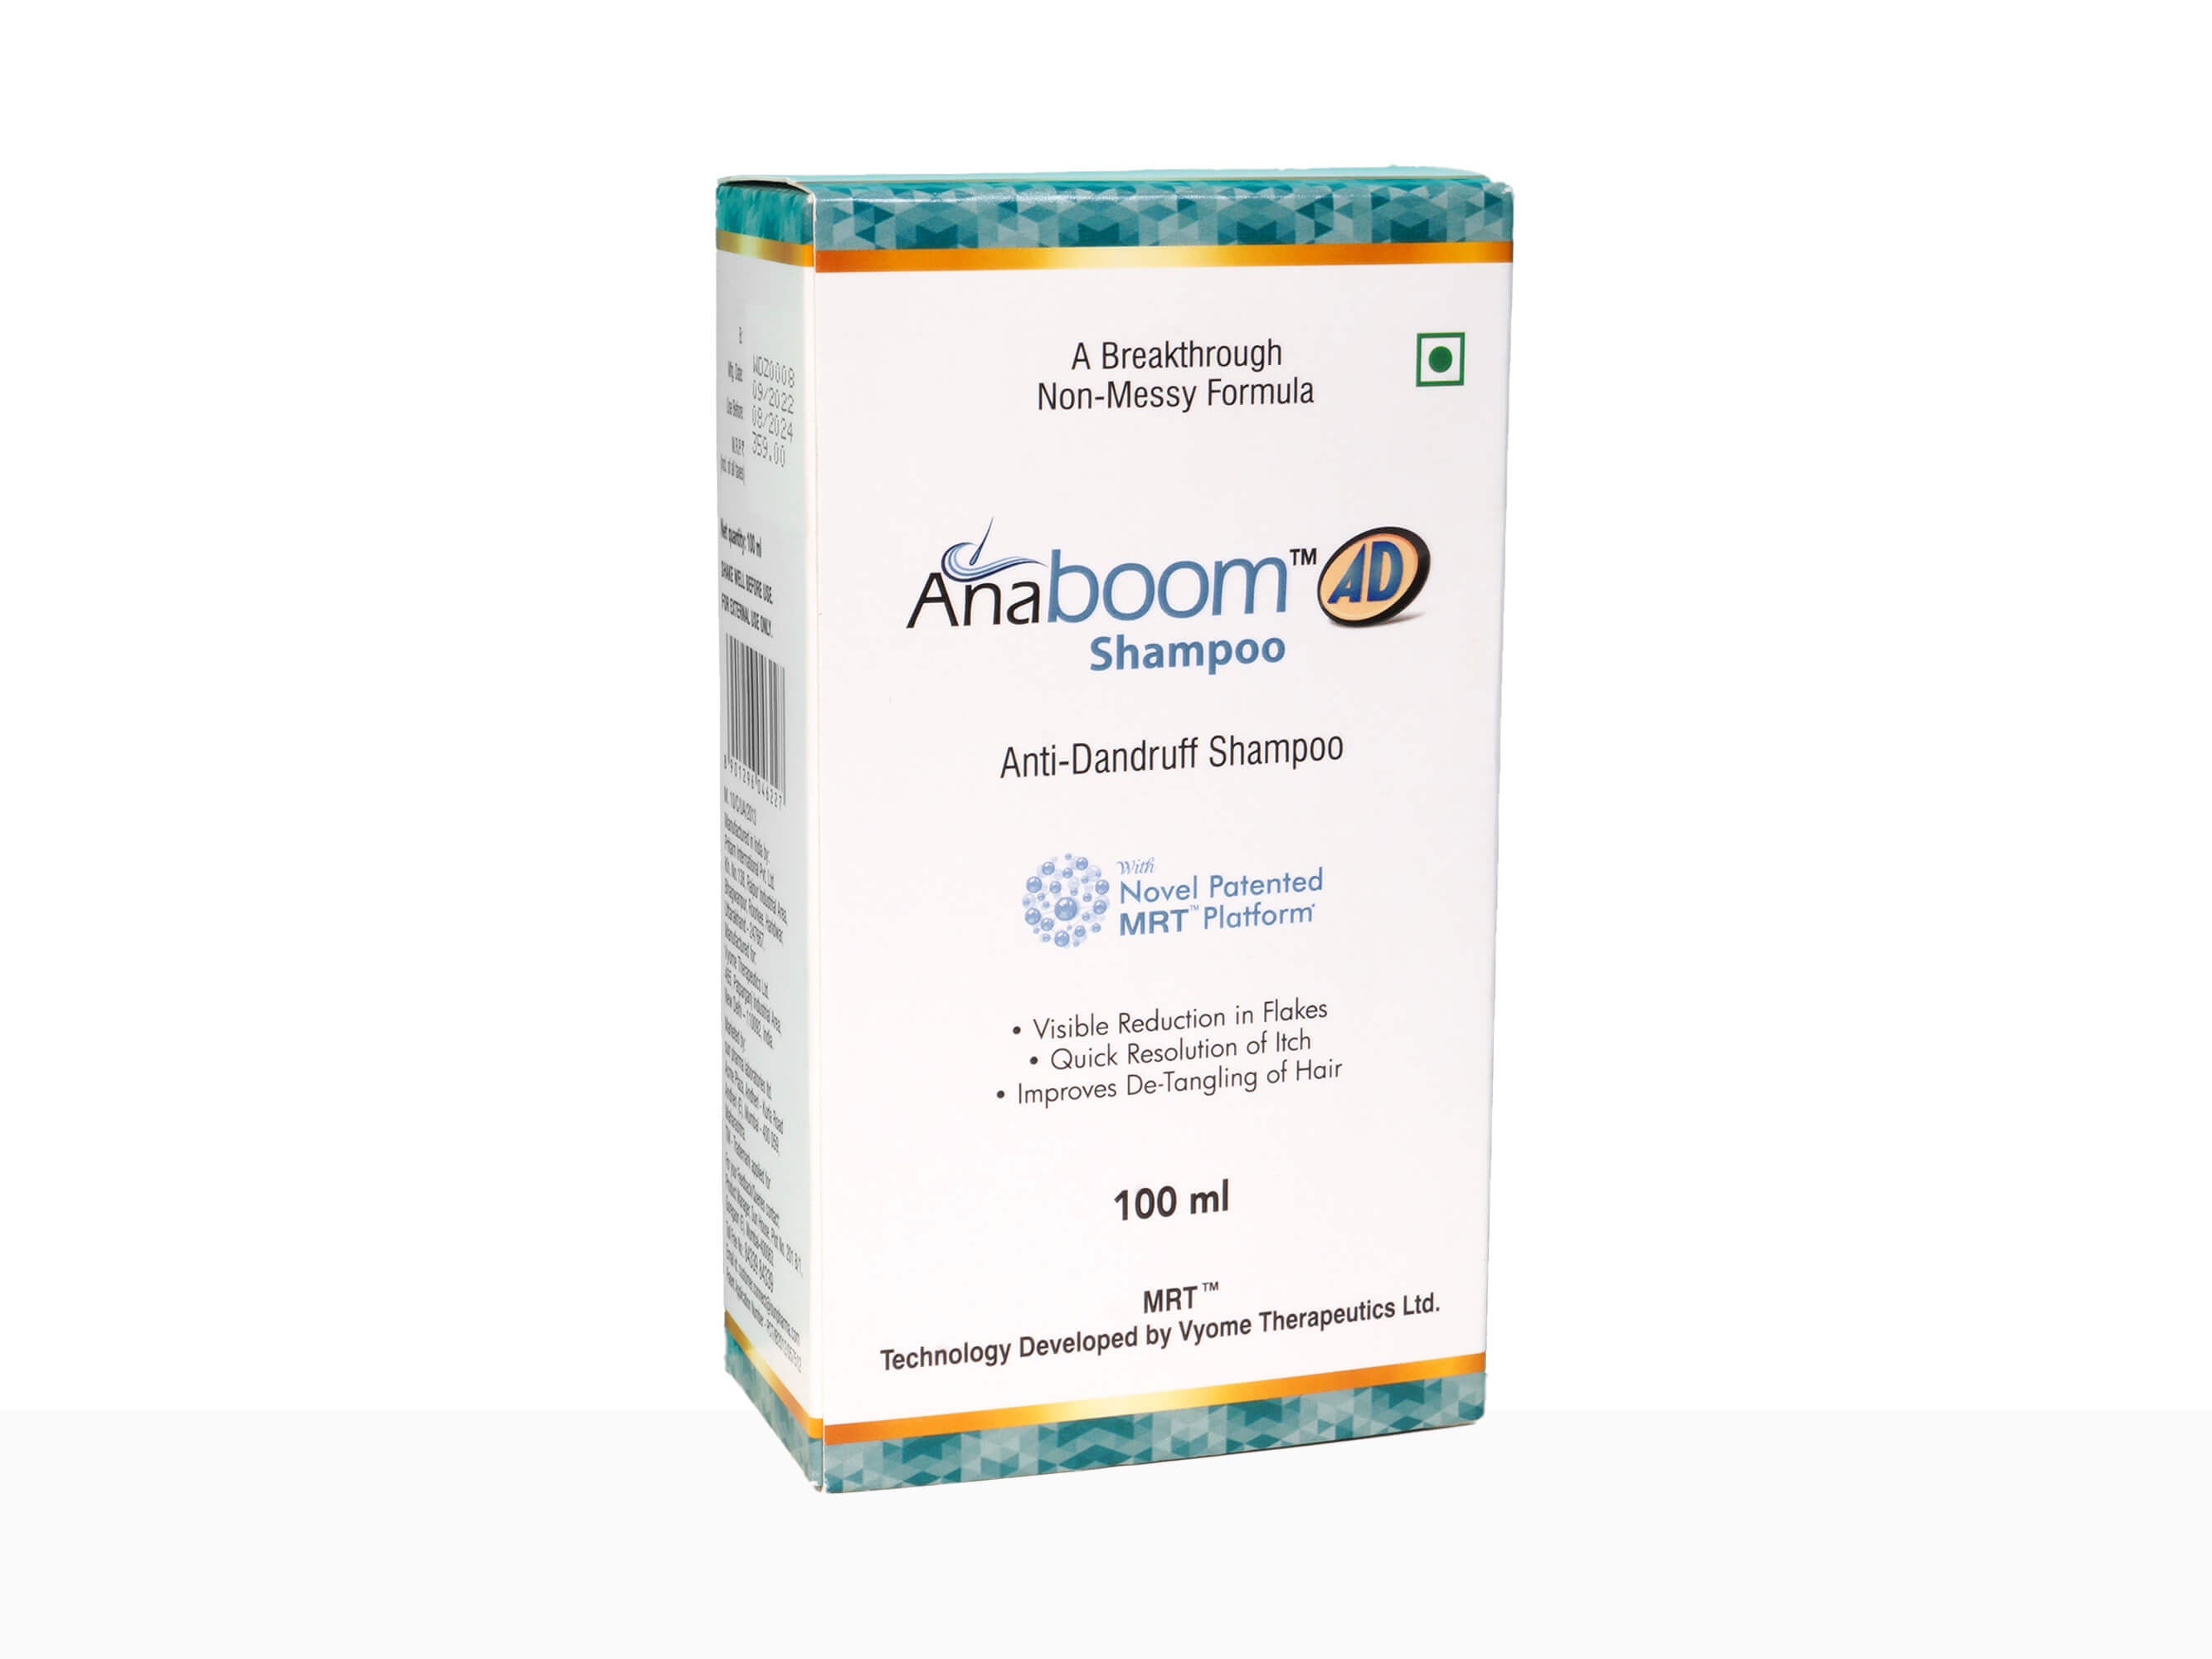 Anaboom AD Anti-Dandruff Shampoo-Clinikally